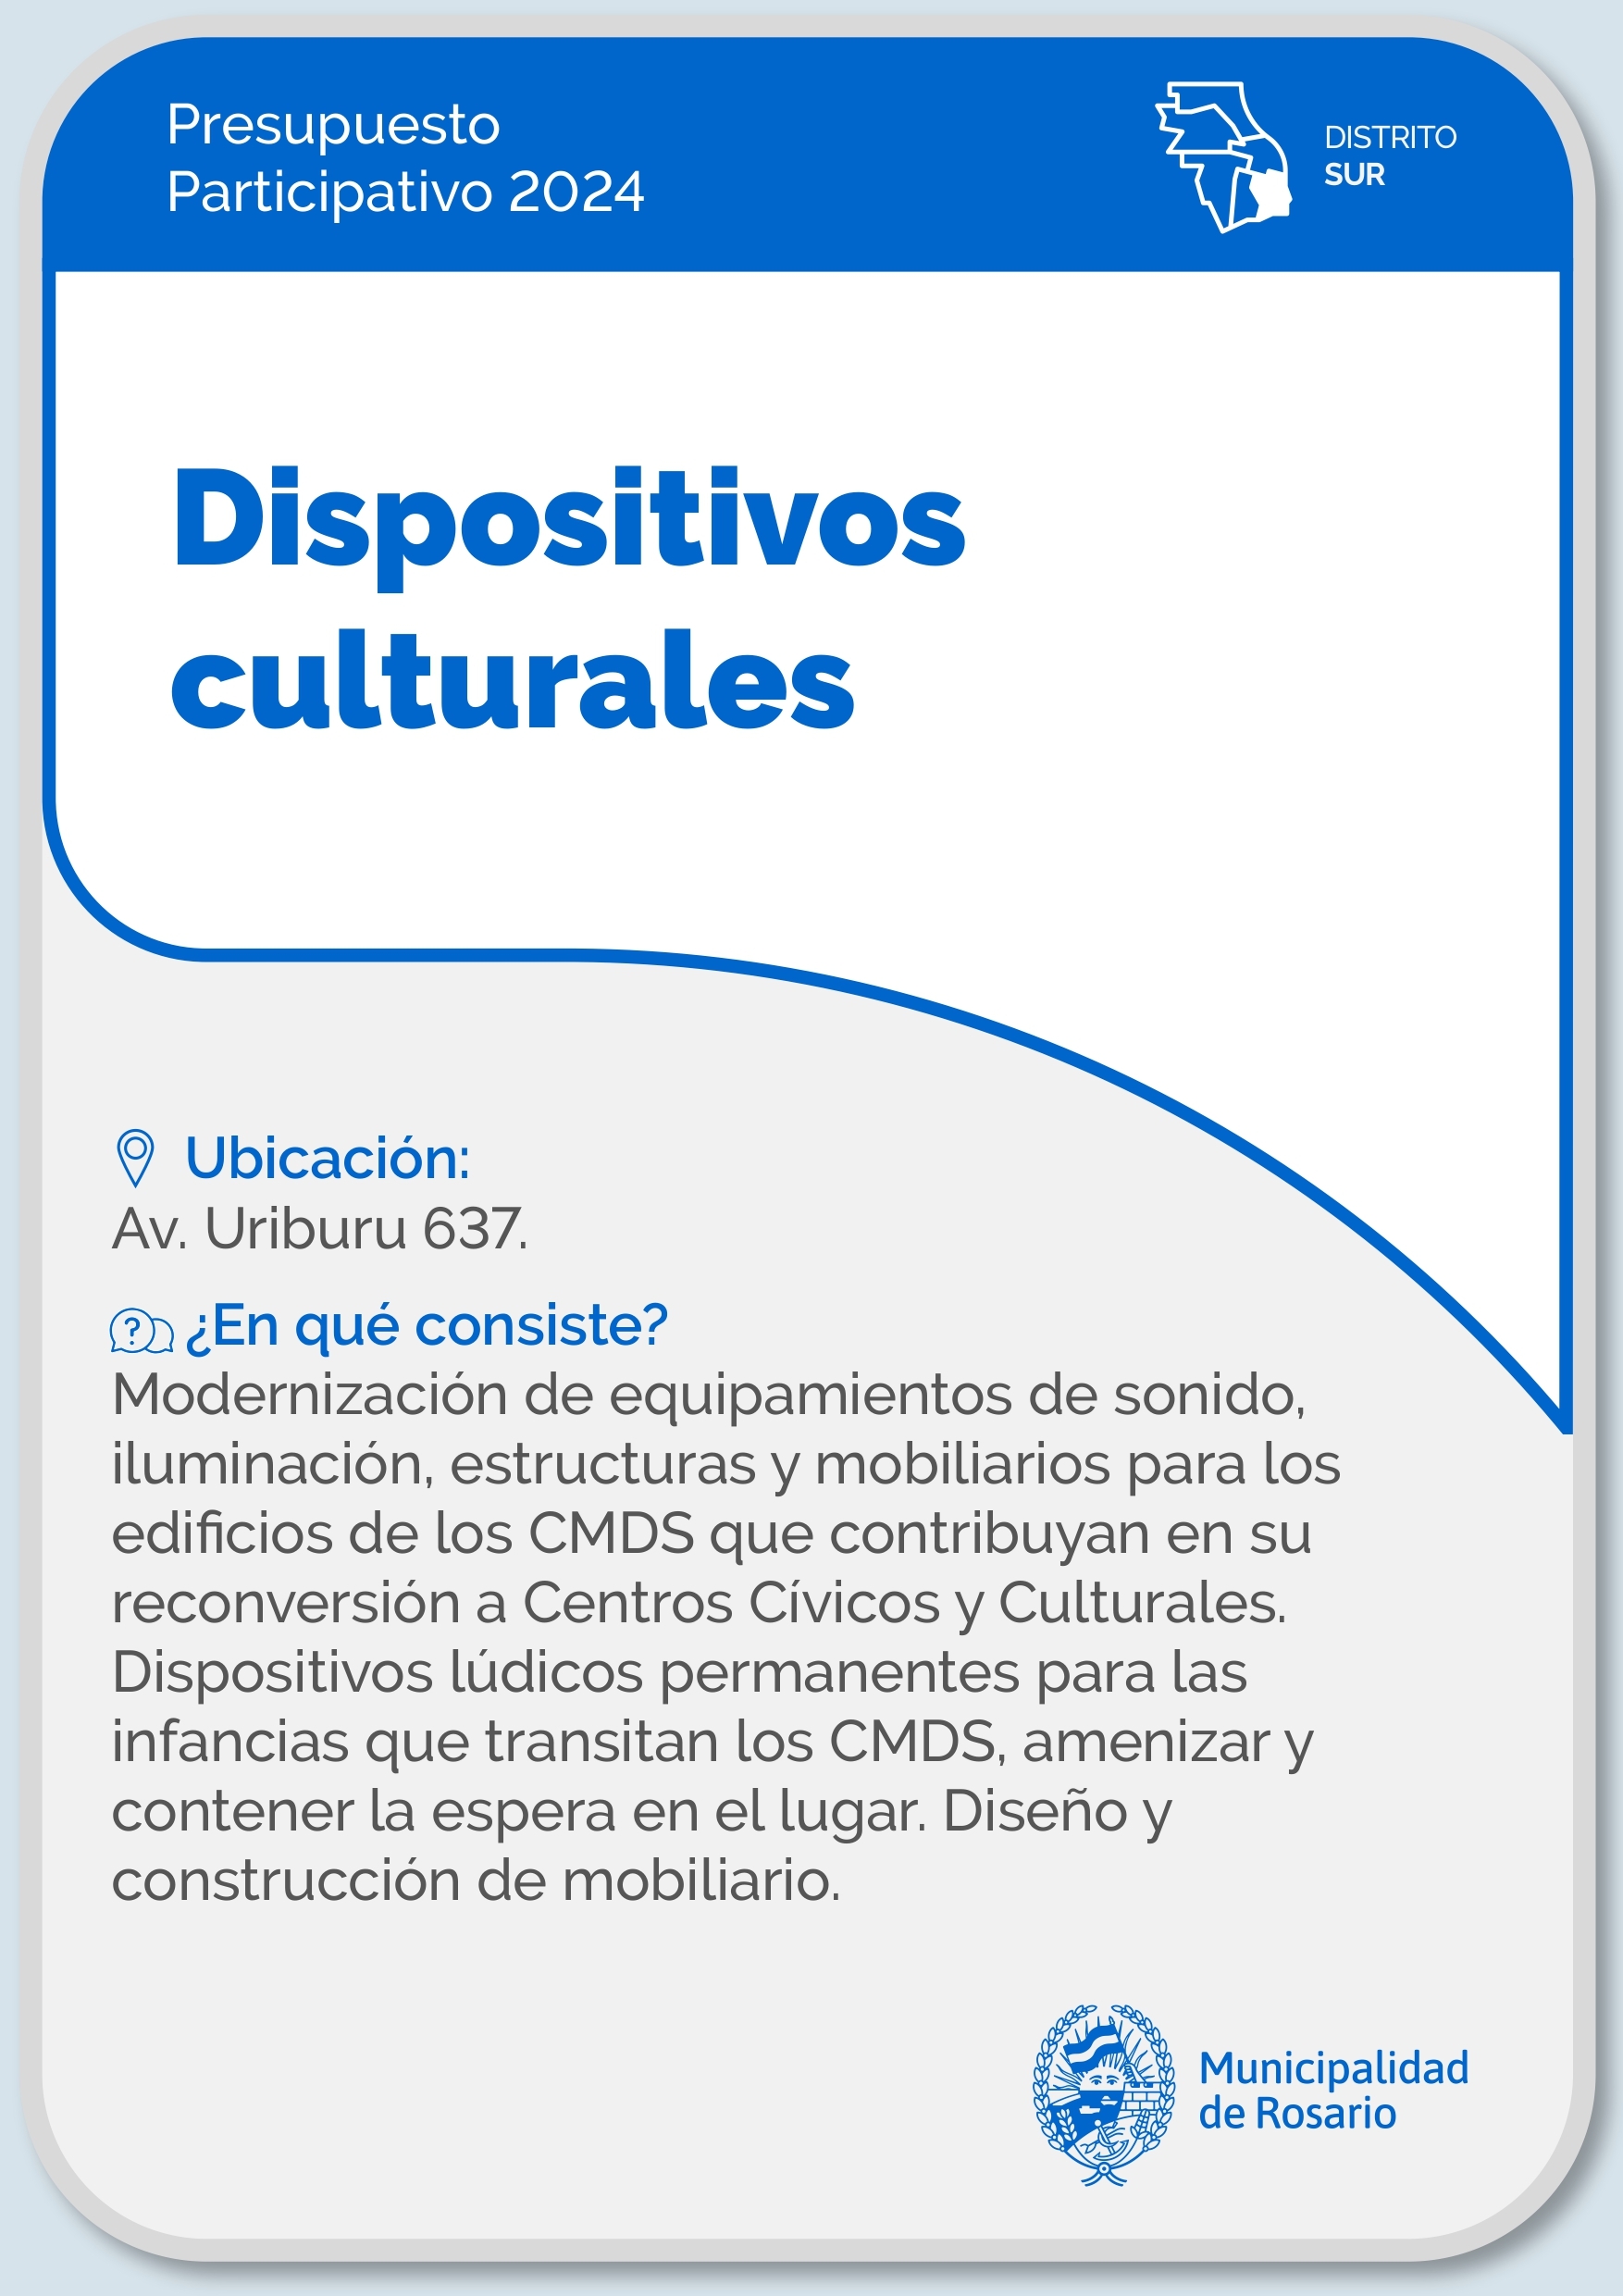 Dispositivos culturales - Distrito Sur